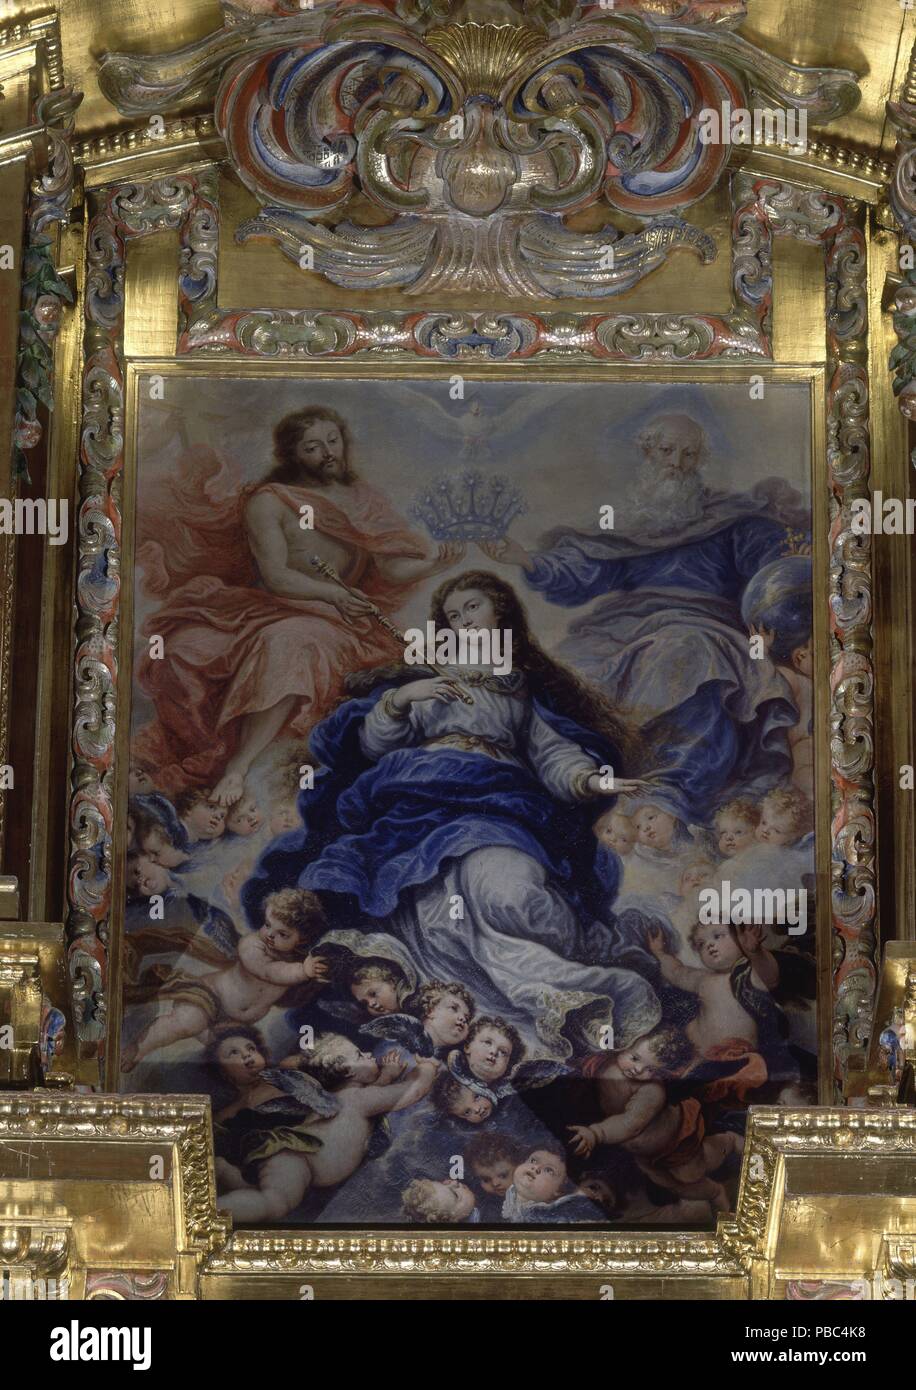 RETABLO MAYOR - CORONACION de la Virgen. Autore: Francisco Rizi (1614-1685). Posizione: IGLESIA PARROQUIAL, fuente el saz, MADRID, Spagna. Foto Stock